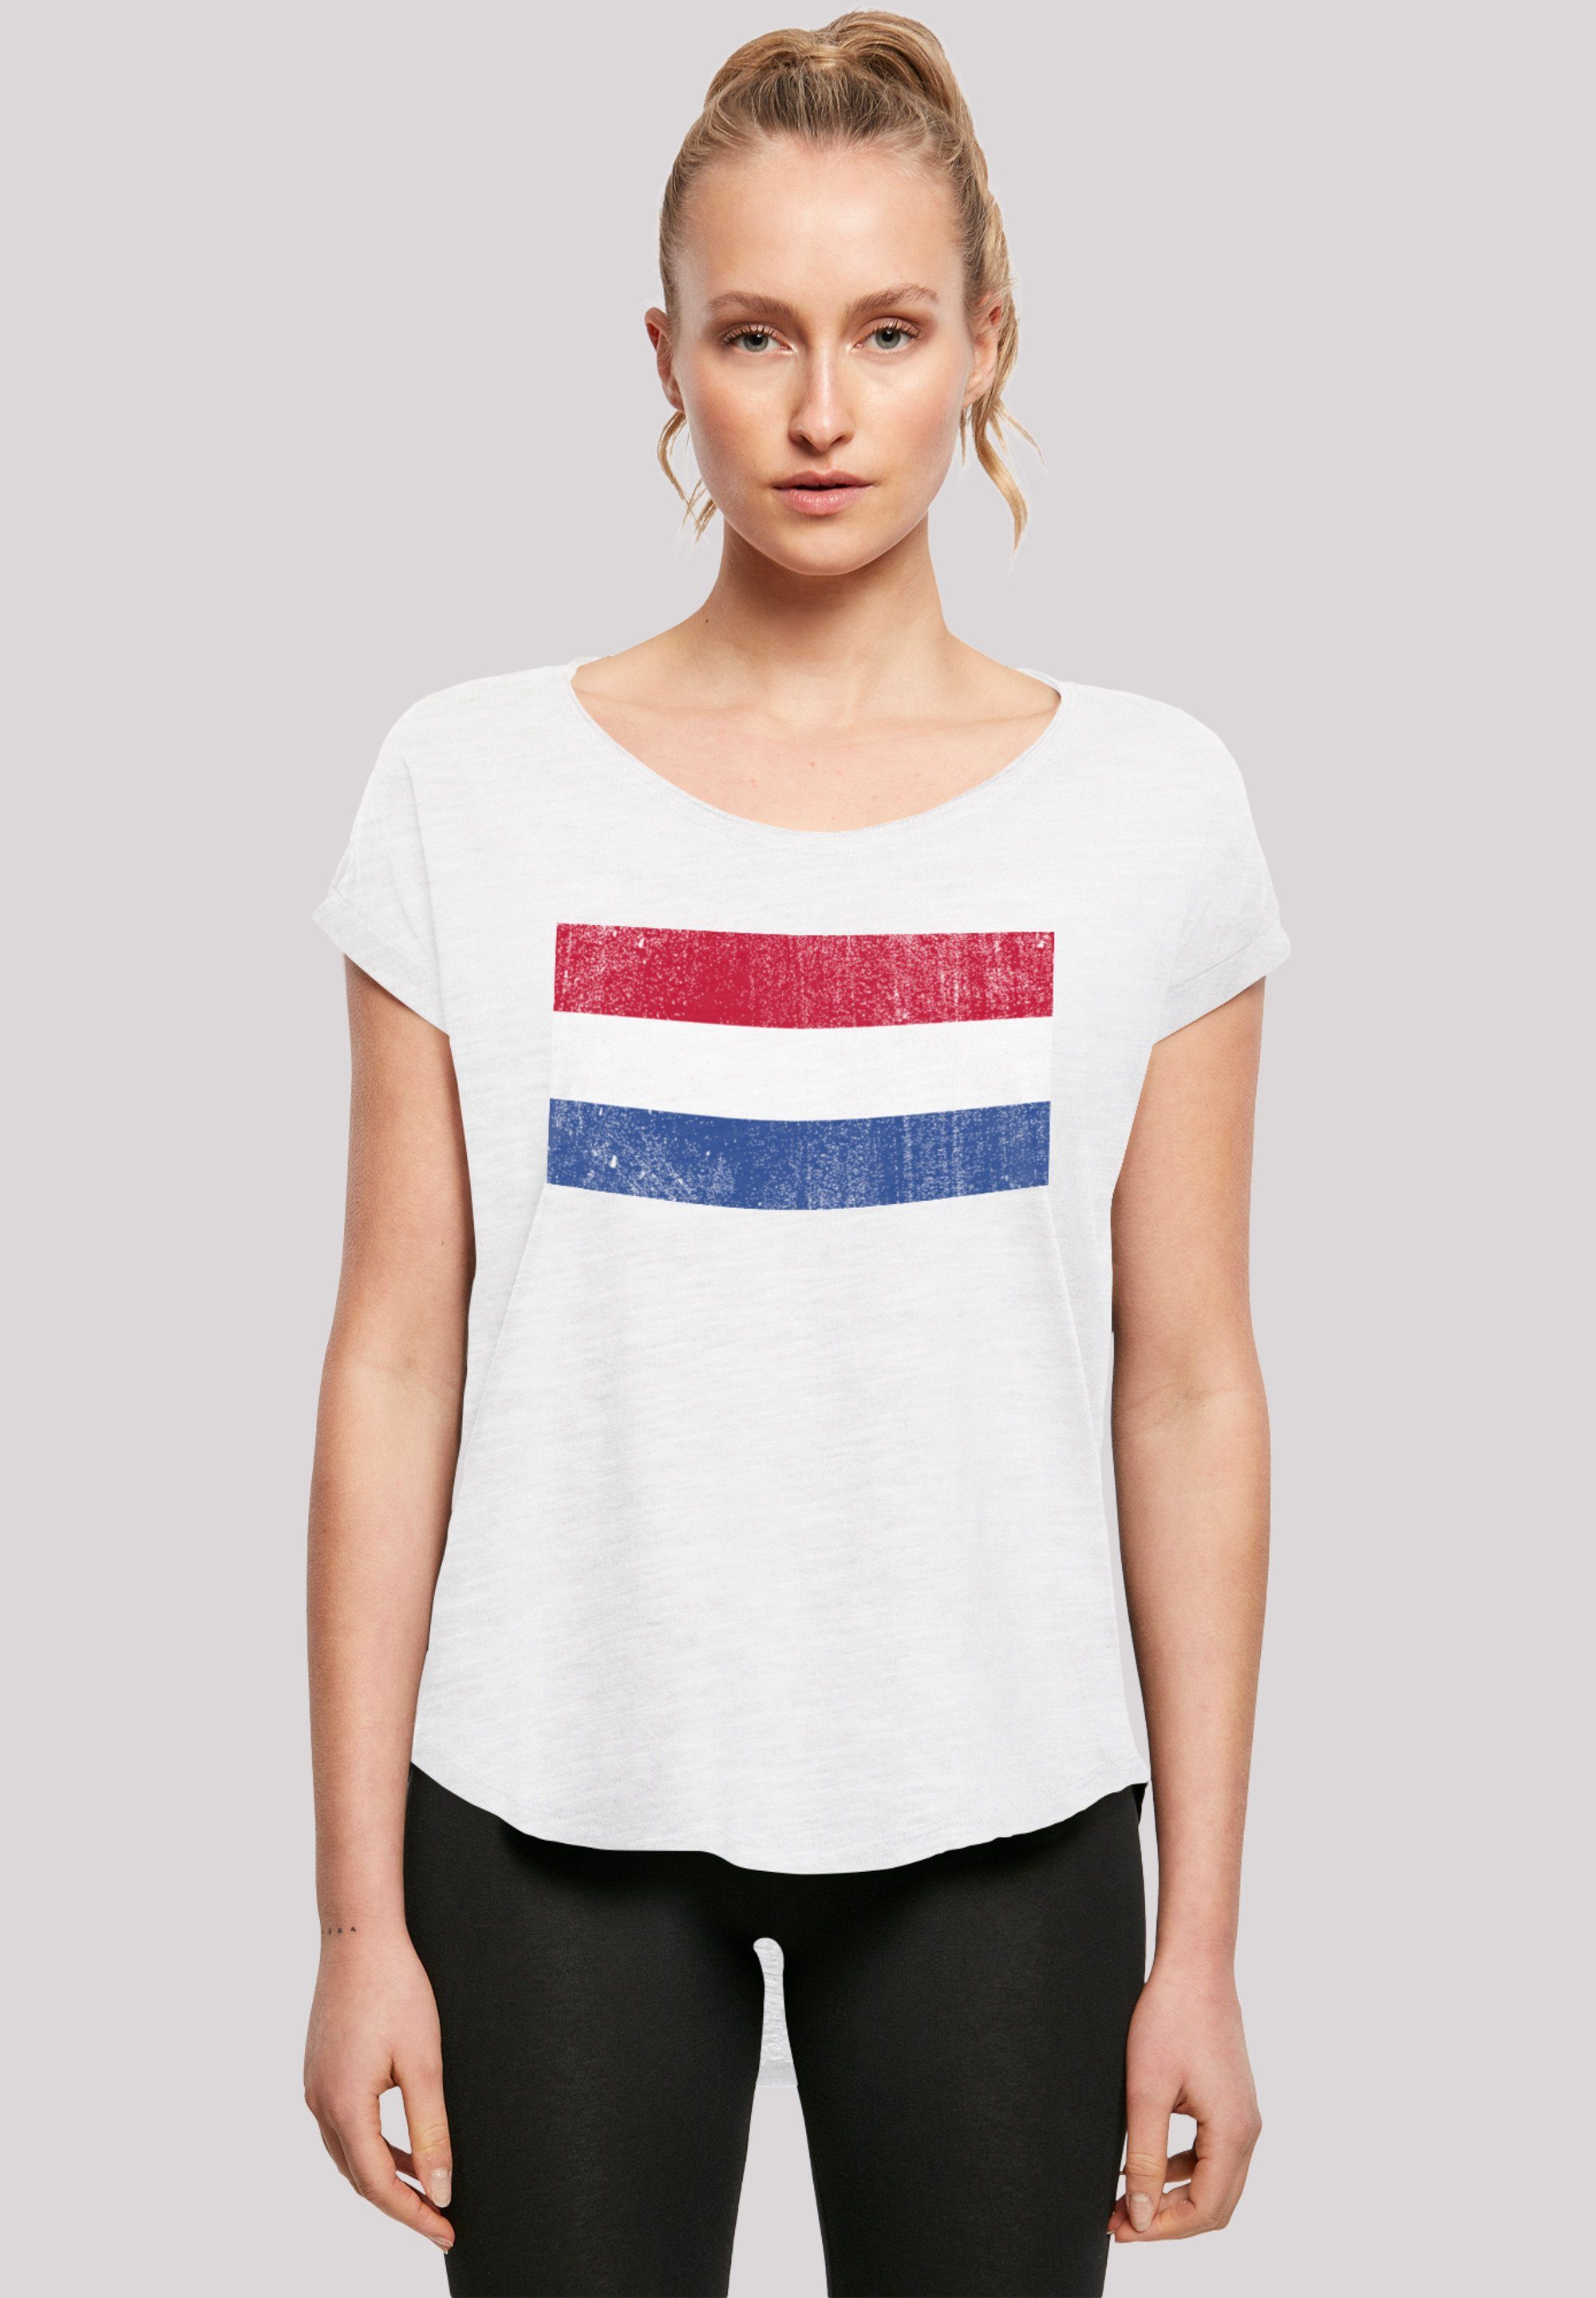 weicher Holland Baumwollstoff NIederlande hohem Tragekomfort Flagge mit Sehr F4NT4STIC distressed T-Shirt Netherlands Print,